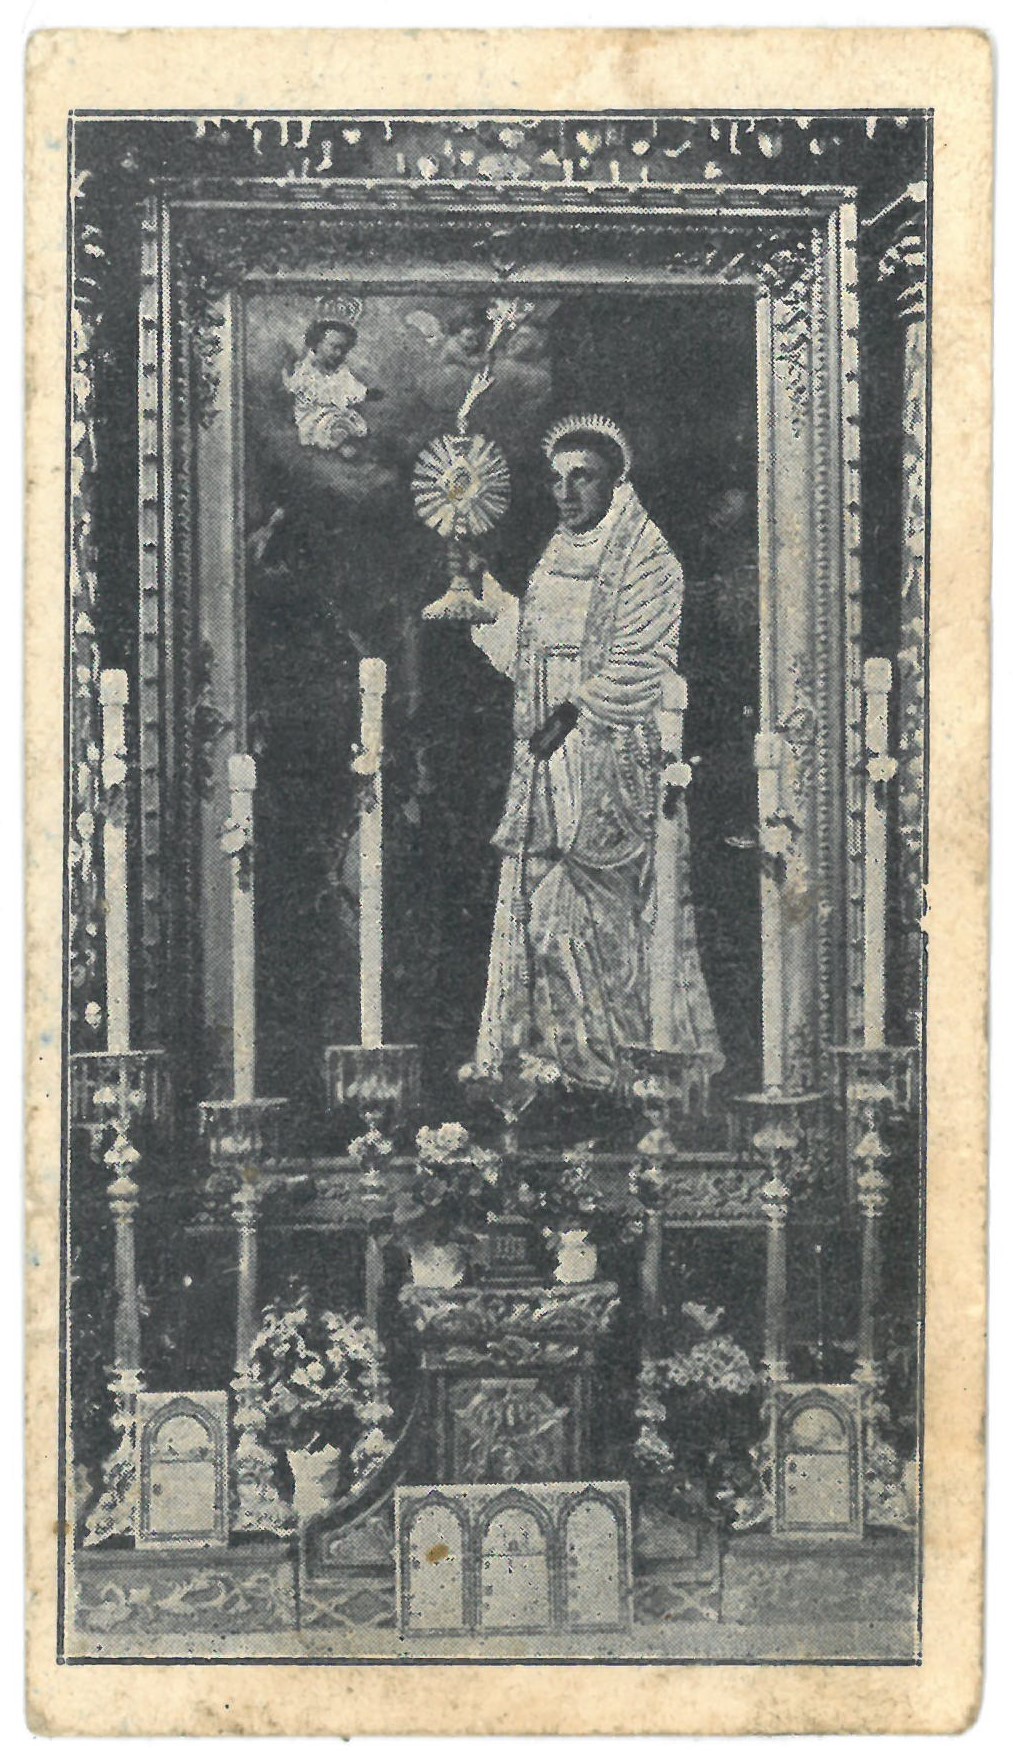 Religinis paveikslėlis. Telšių vyskupijos III eucharistinio kongreso atsiminimui. Priekinėje pusėje išspausdintas Kretingos Šv. Antano altoriaus paveikslo fotografinis vaizdas, o kitoje pusėje – padėkos tekstas